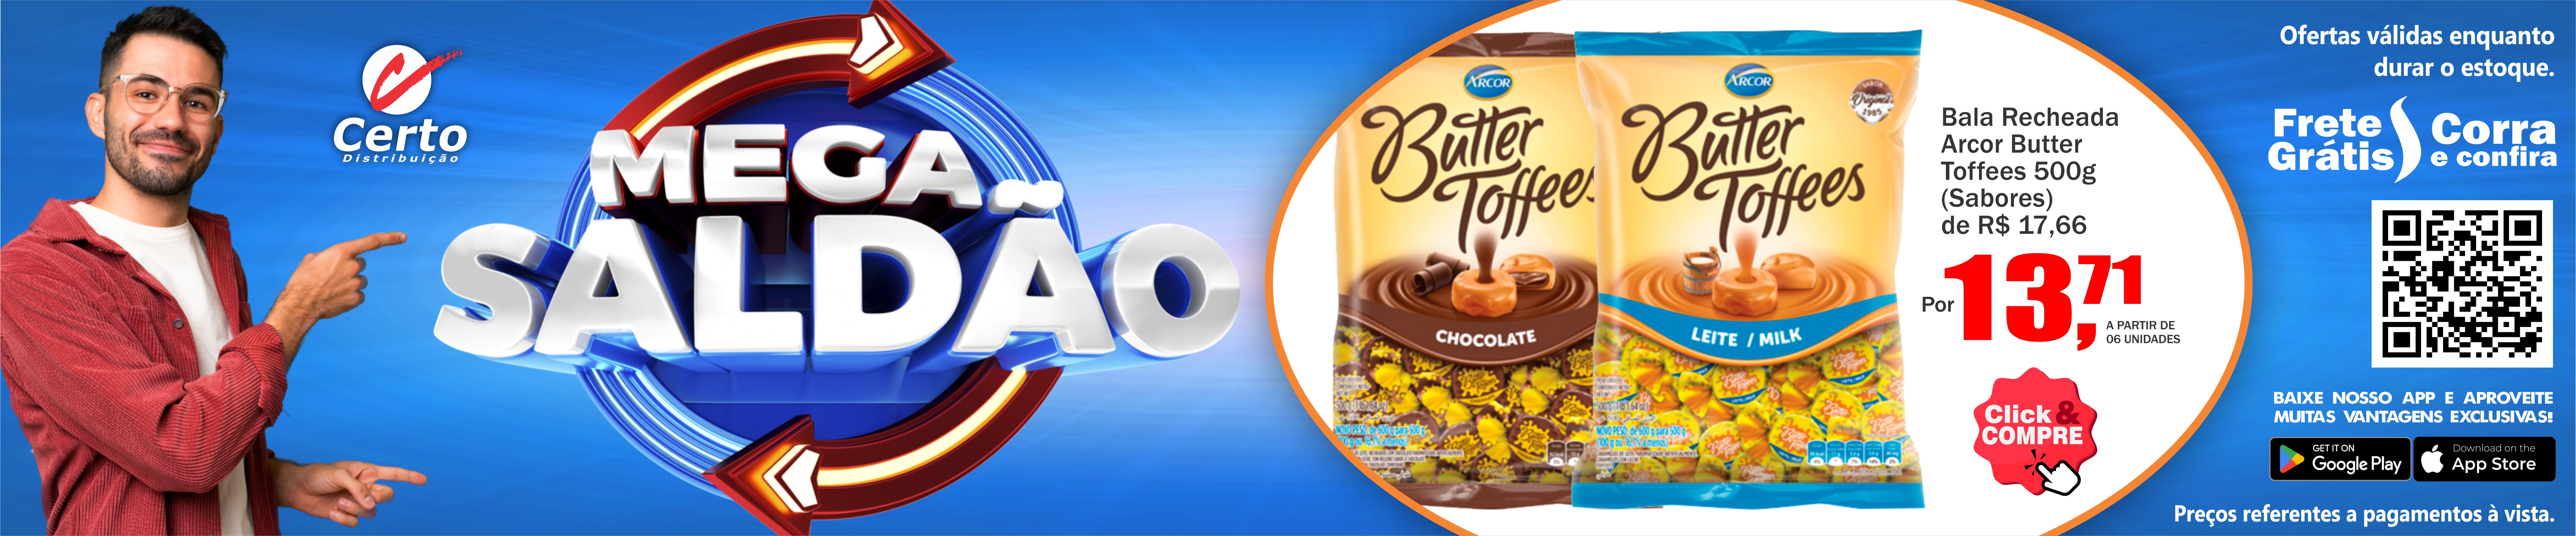 Bala Recheada Arcor Butter Toffees 500g!😀